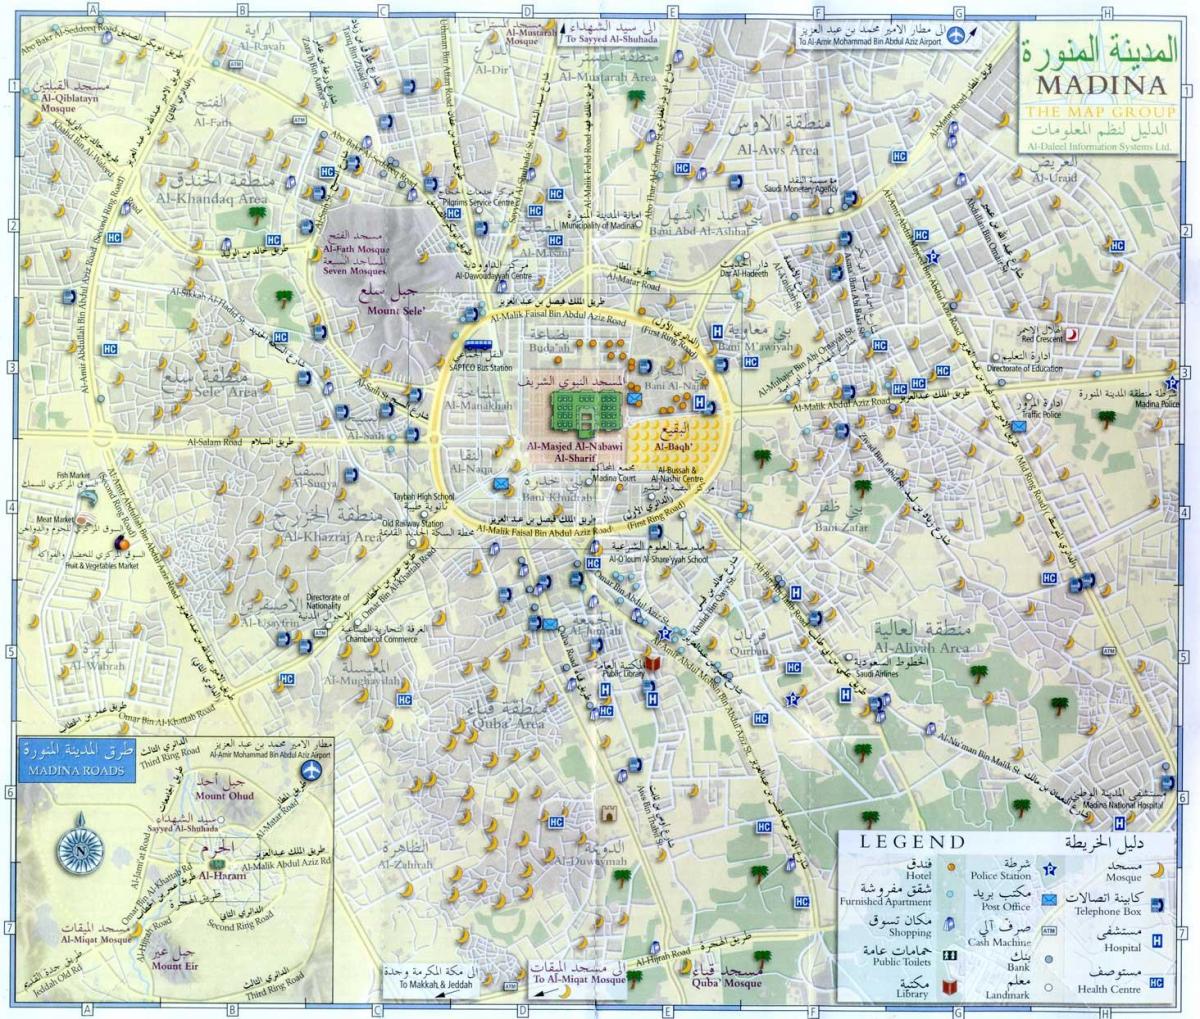 Mapa das ruas de Meca (Makkah)